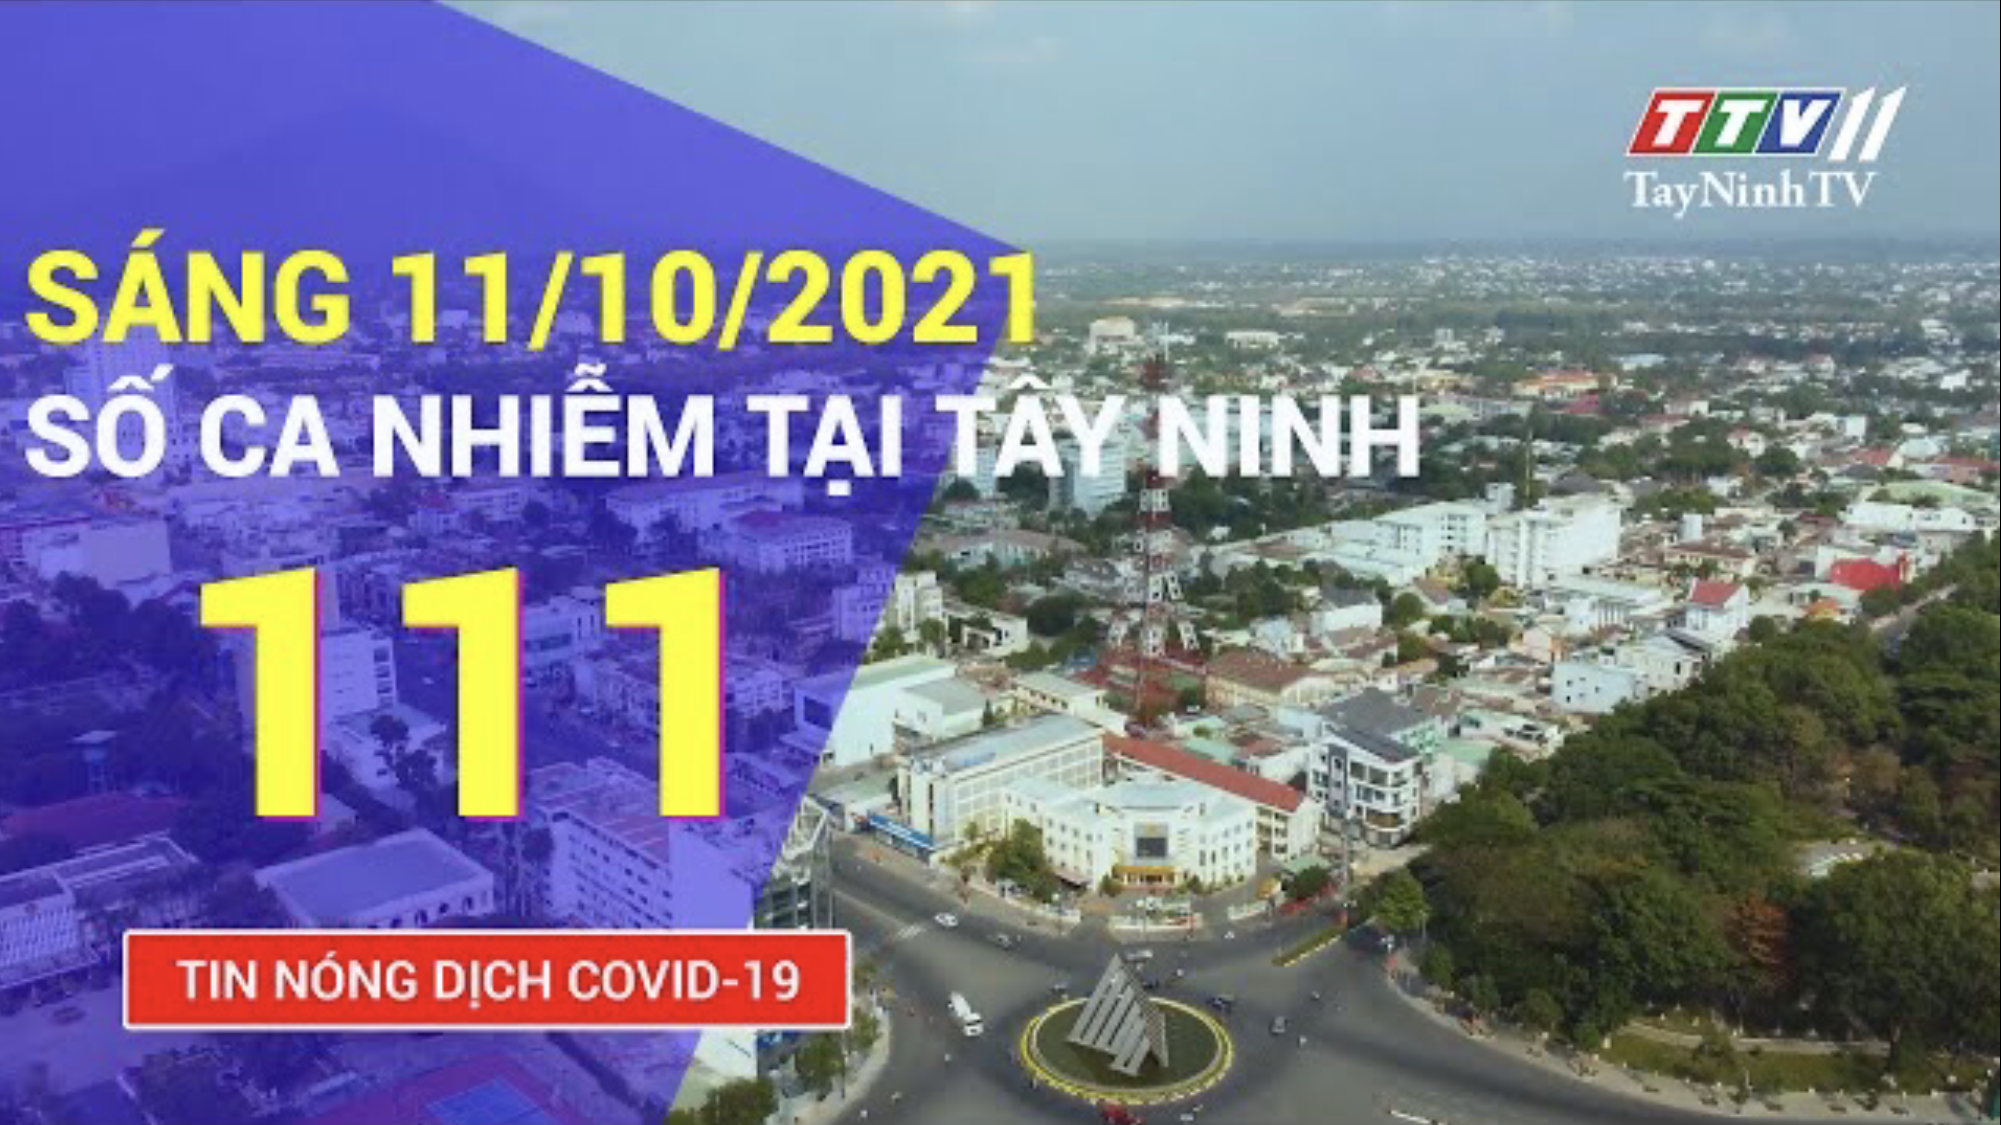 TIN TỨC COVID-19 SÁNG 11/10/2021 | Tin tức hôm nay | TayNinhTV